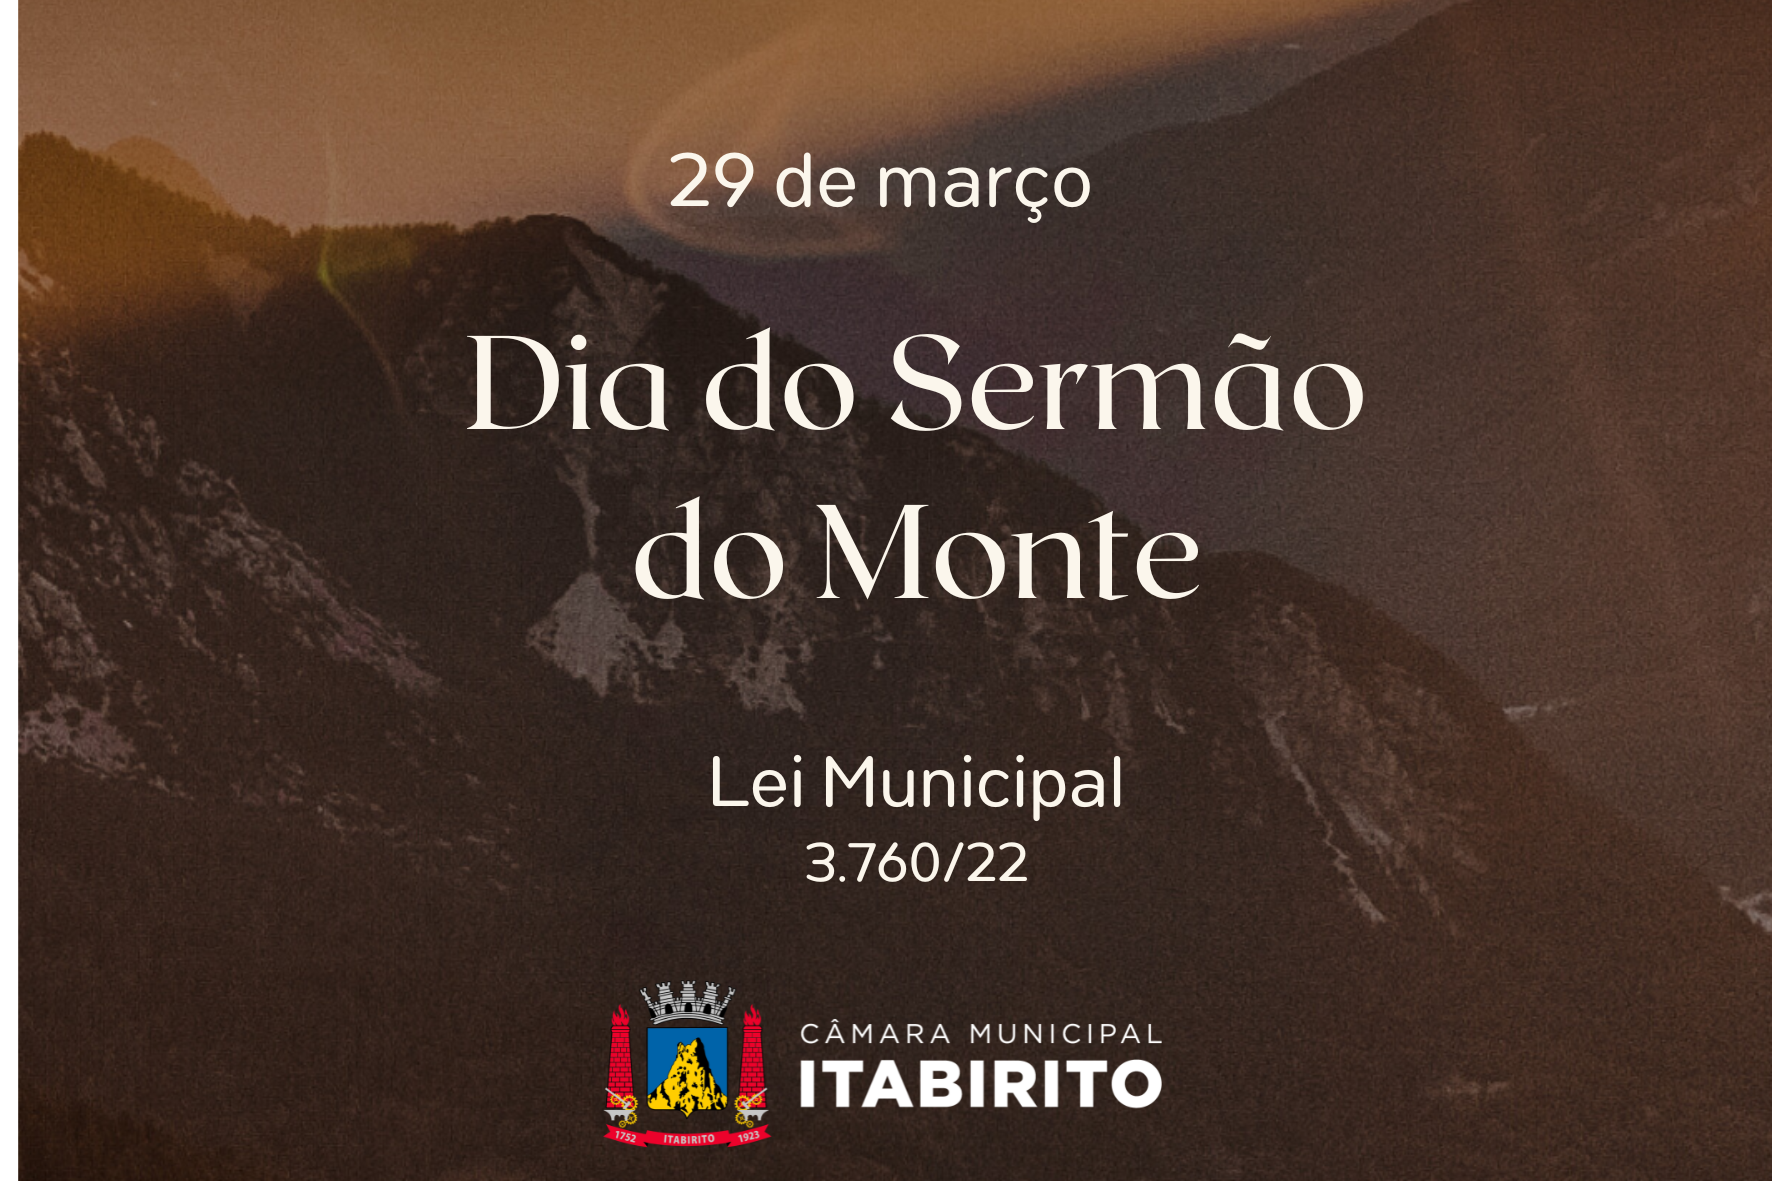 Dia do Sermão do Monte será celebrado nesta sexta-feira em Itabirito